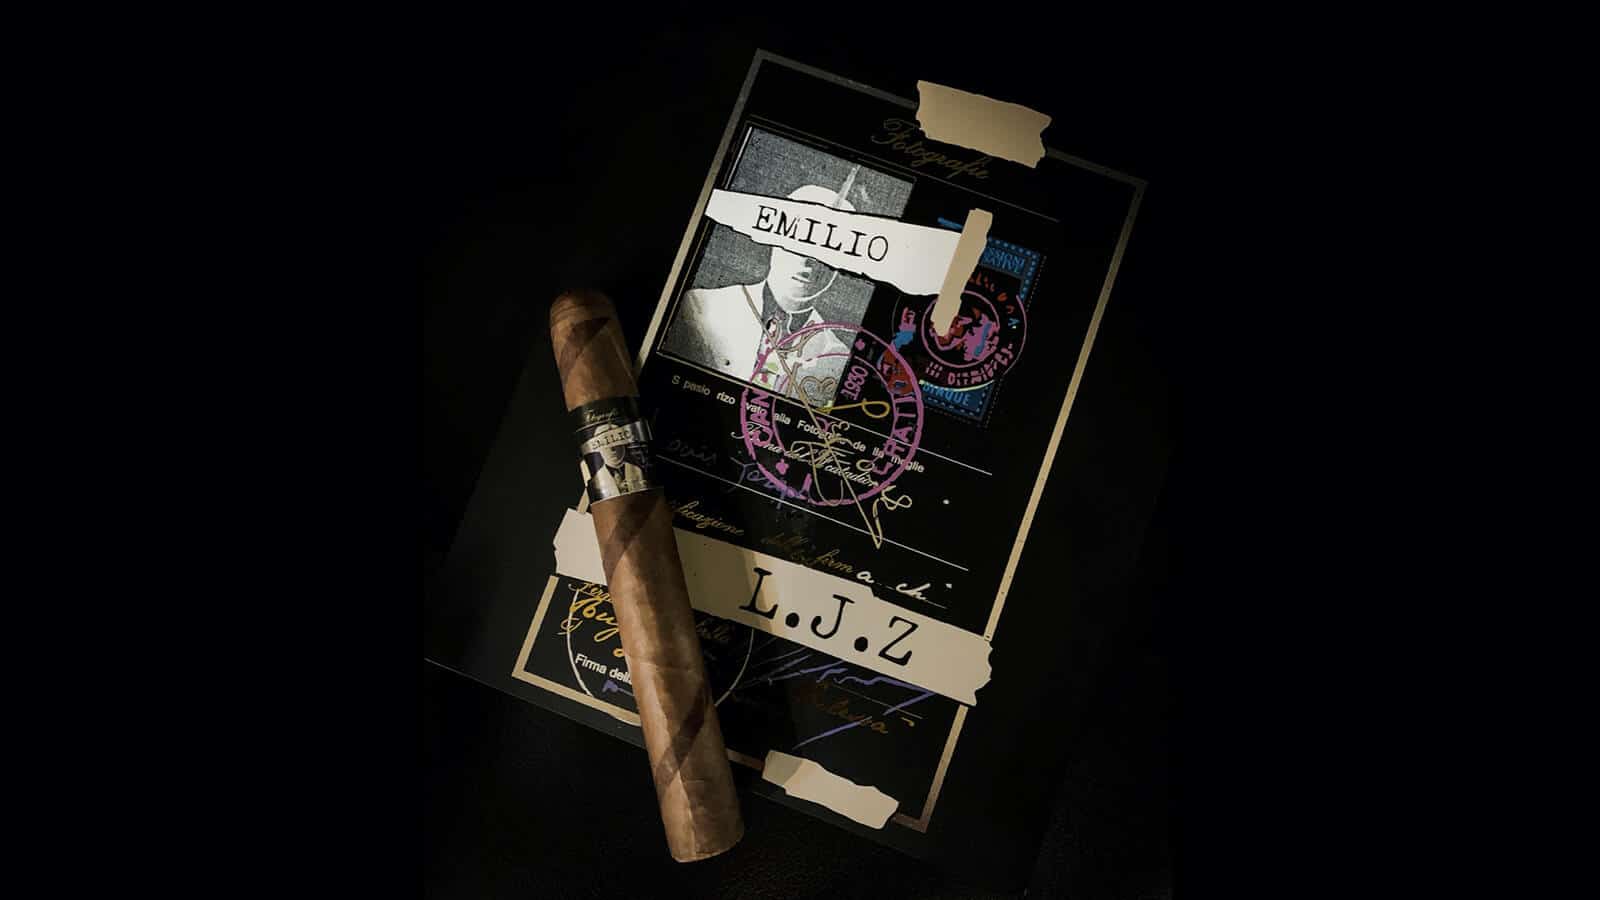 Emilio Cigars Limited Edition LJZ